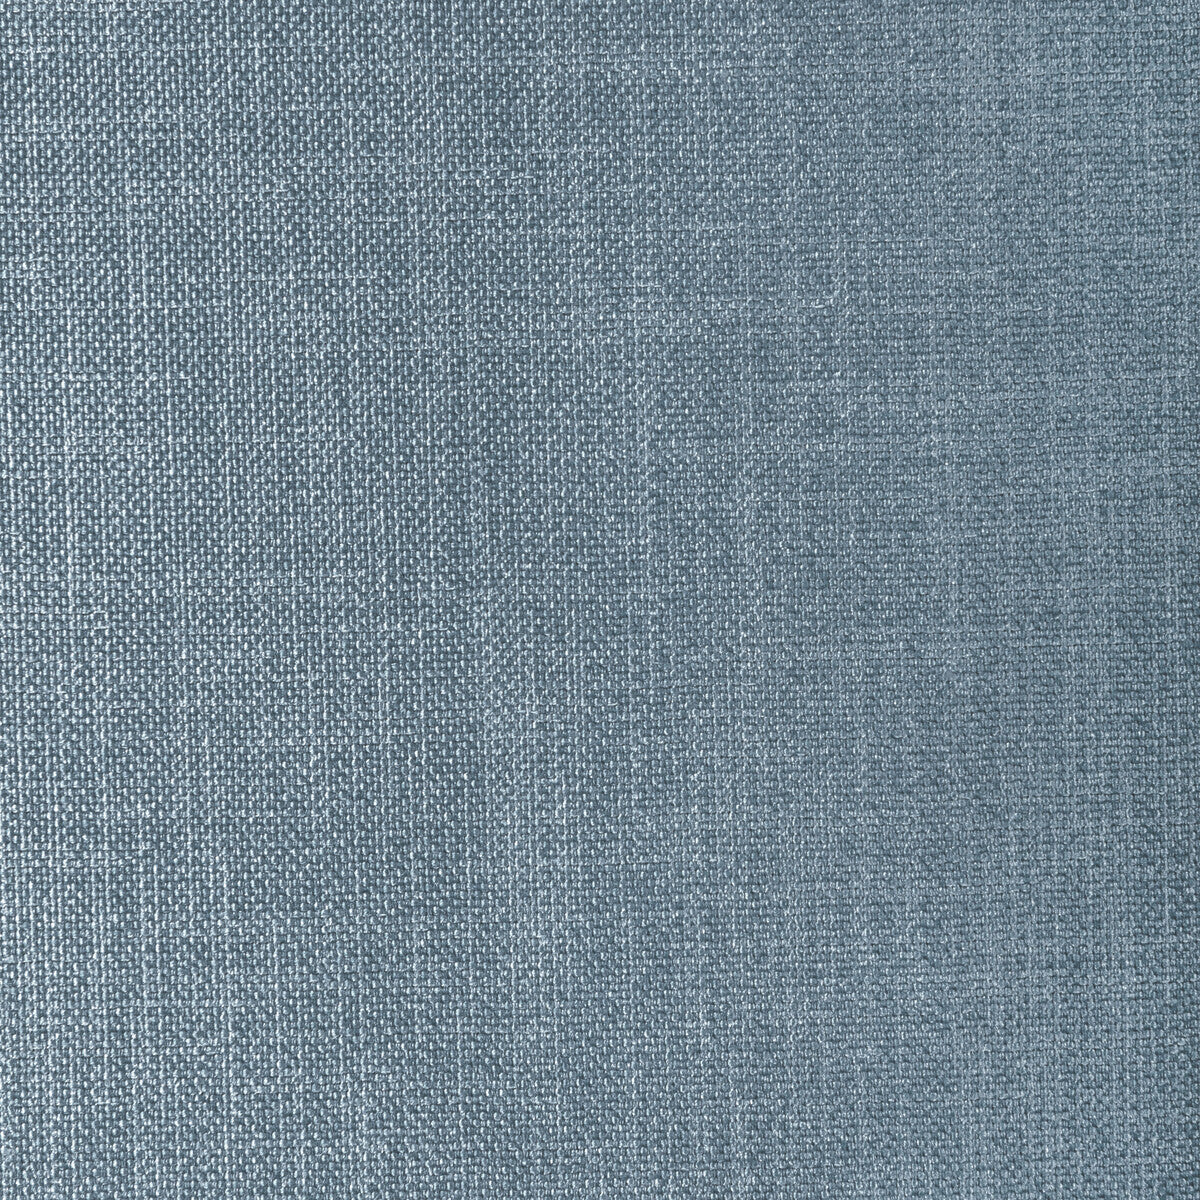 Kravet Basics fabric in 33120-115 color - pattern 33120.115.0 - by Kravet Basics